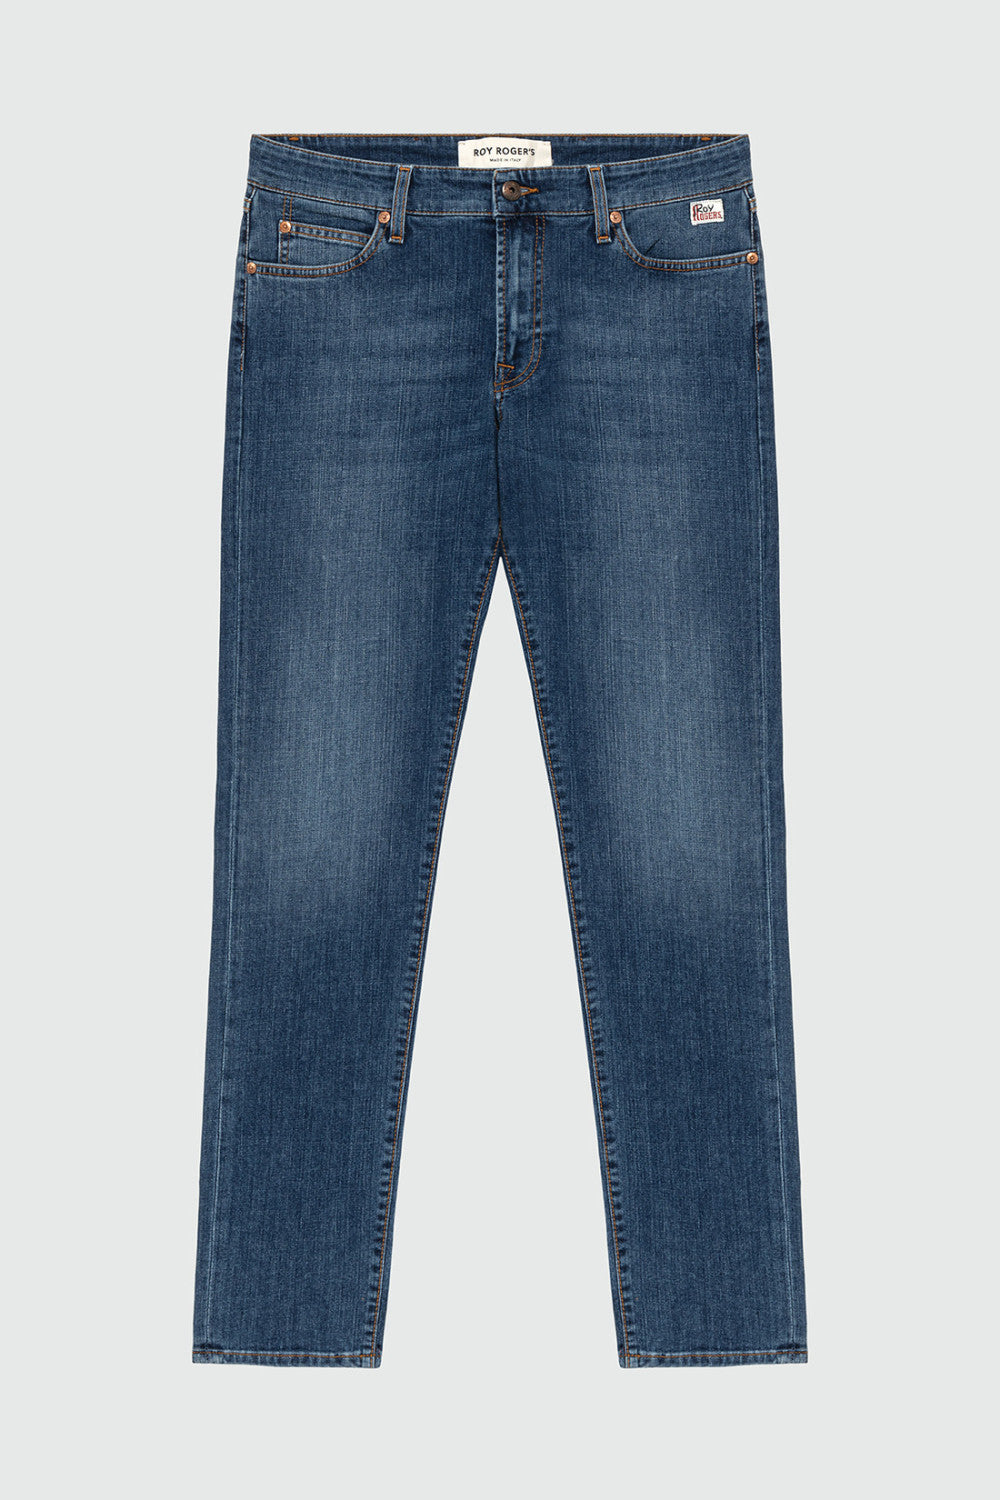 Jeans 517 Lavaggio Medio / Jeans - Ideal Moda